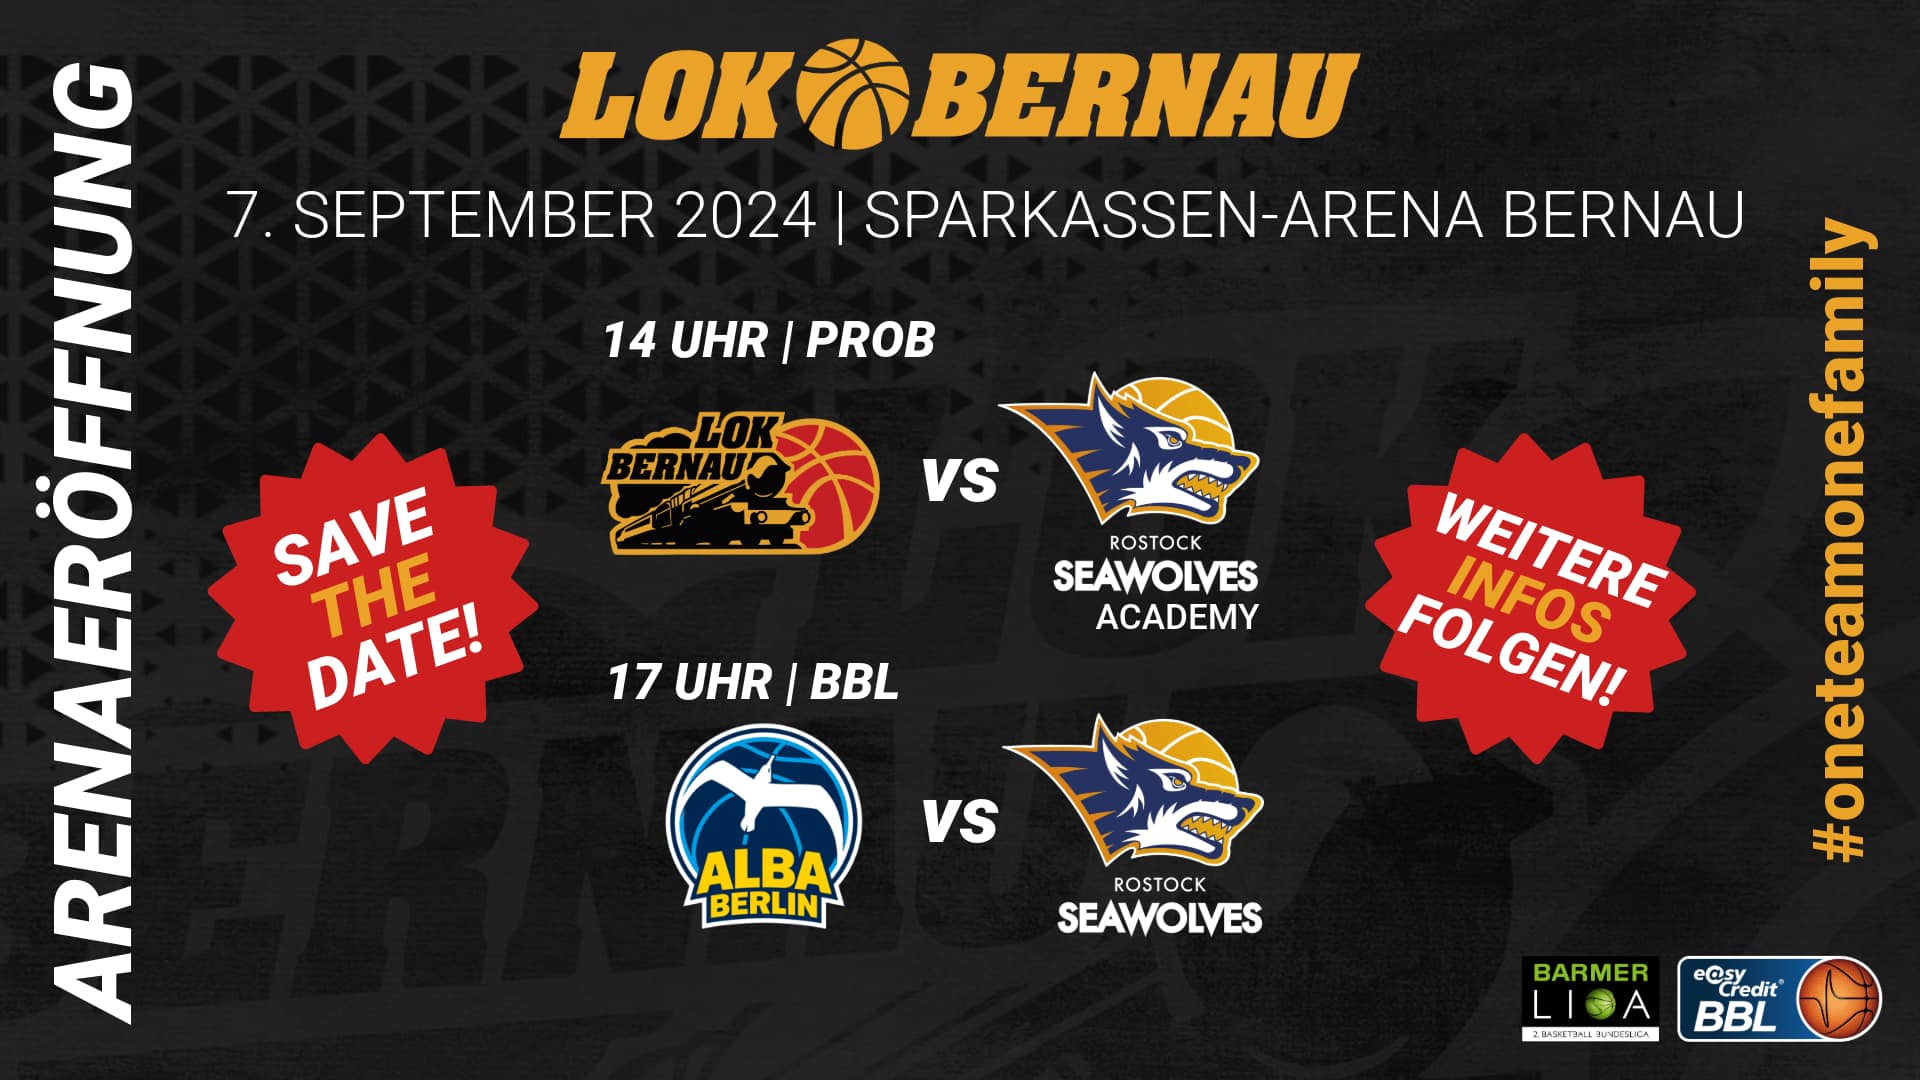 LOK Bernau Arenaeröffnung – Einweihung der neuen Sparkassen-Arena